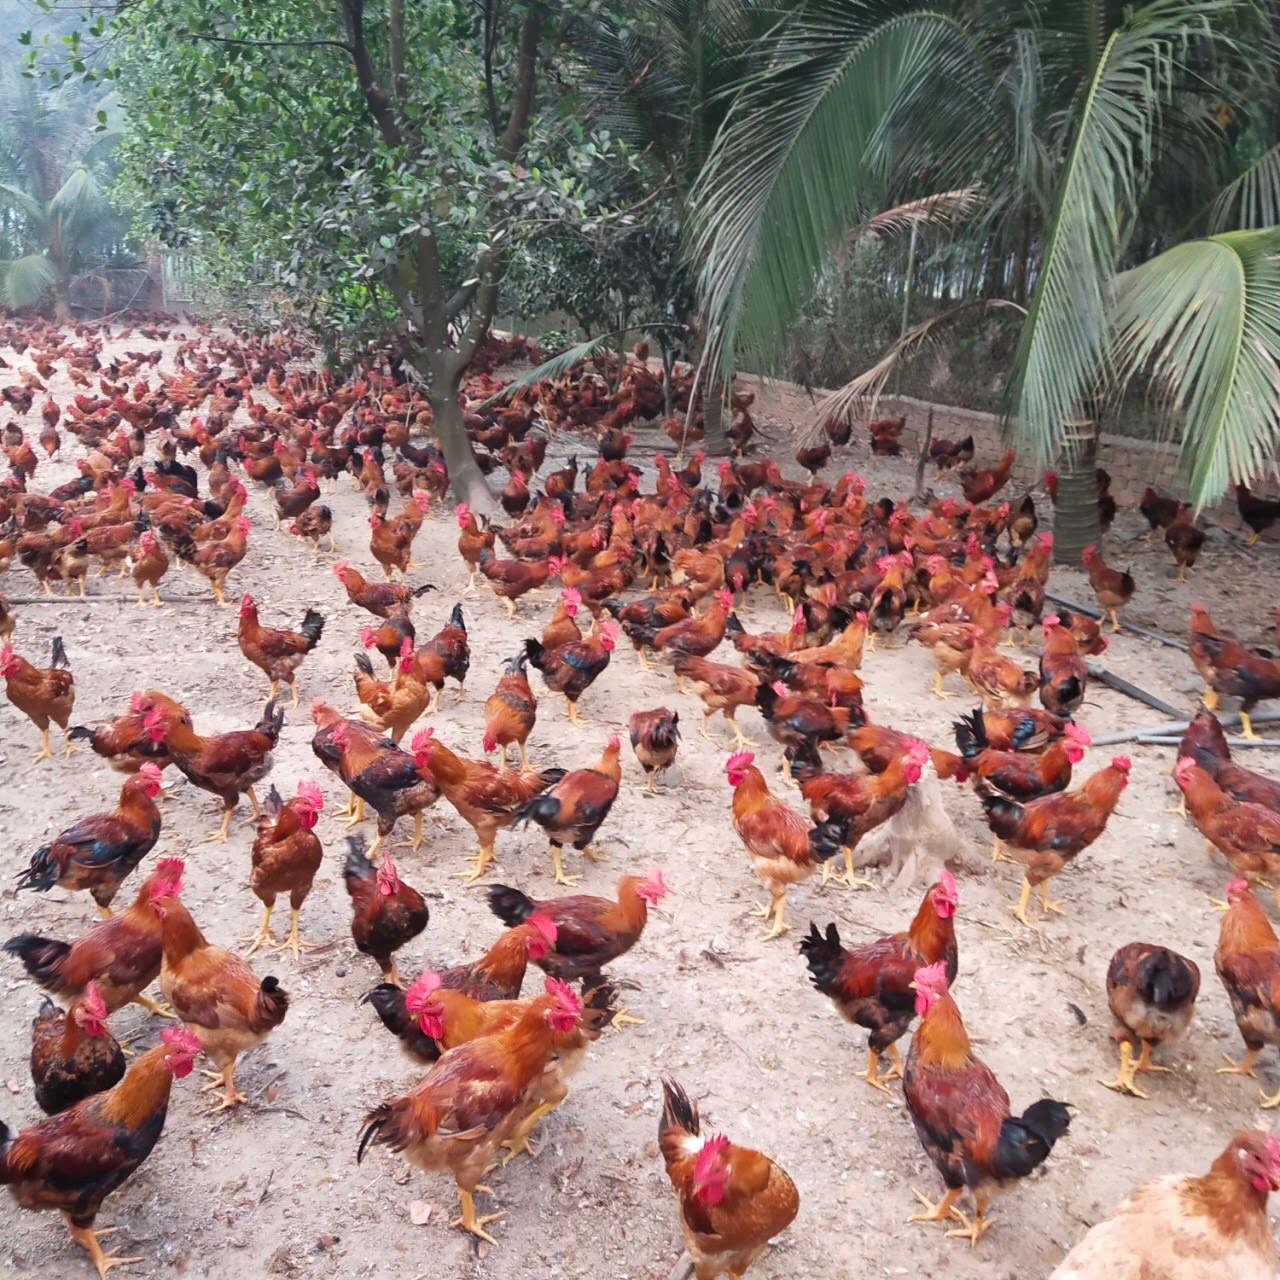 Trở thành tỷ phú nhờ chăn nuôi gà thả vườn  Choluoicom